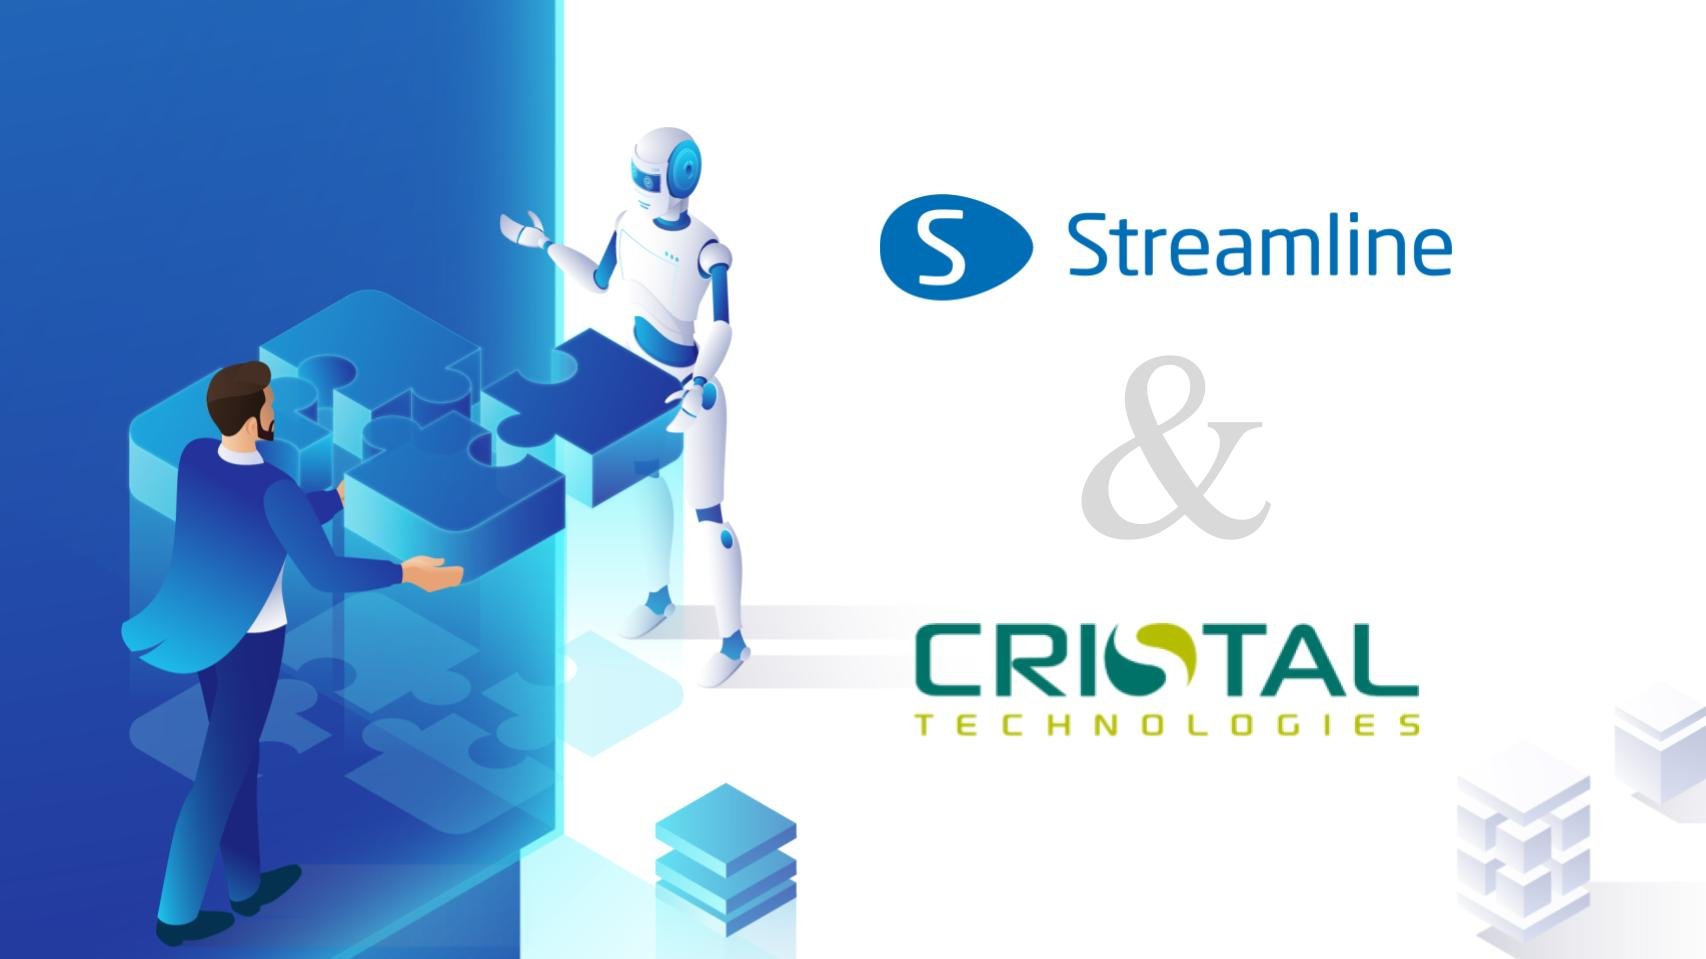 GMDH Streamline dan Cristal Technologies mengumumkan kemitraan strategis